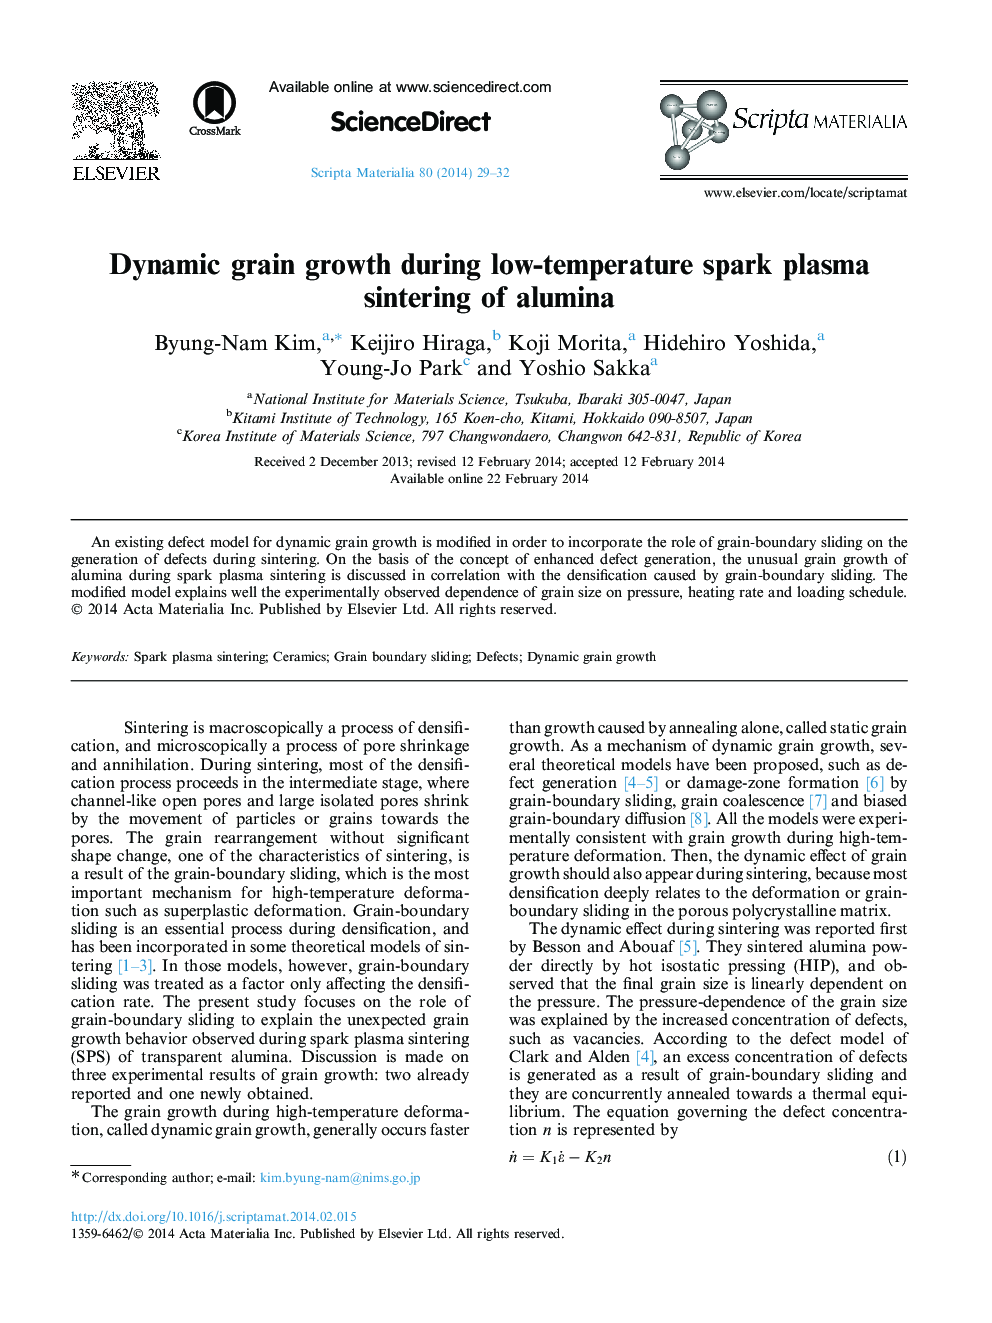 رشد دانه داینامیک در طوفان پلاسما در دمای پایین دمای آلومینا 